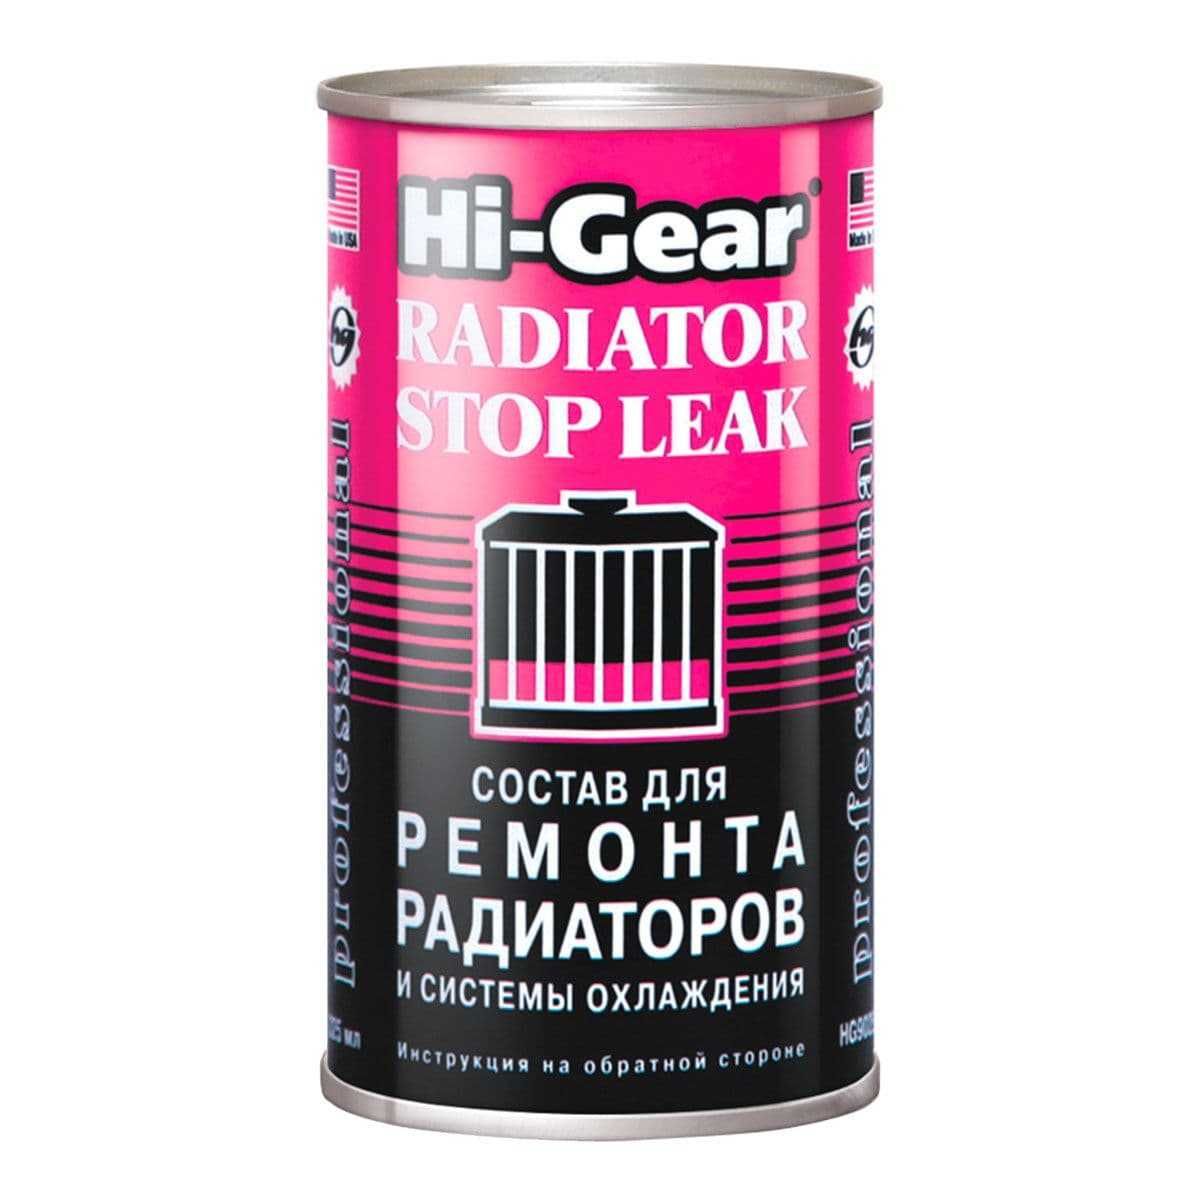 Жидкие полимерные герметики от фирмы Hi Gear